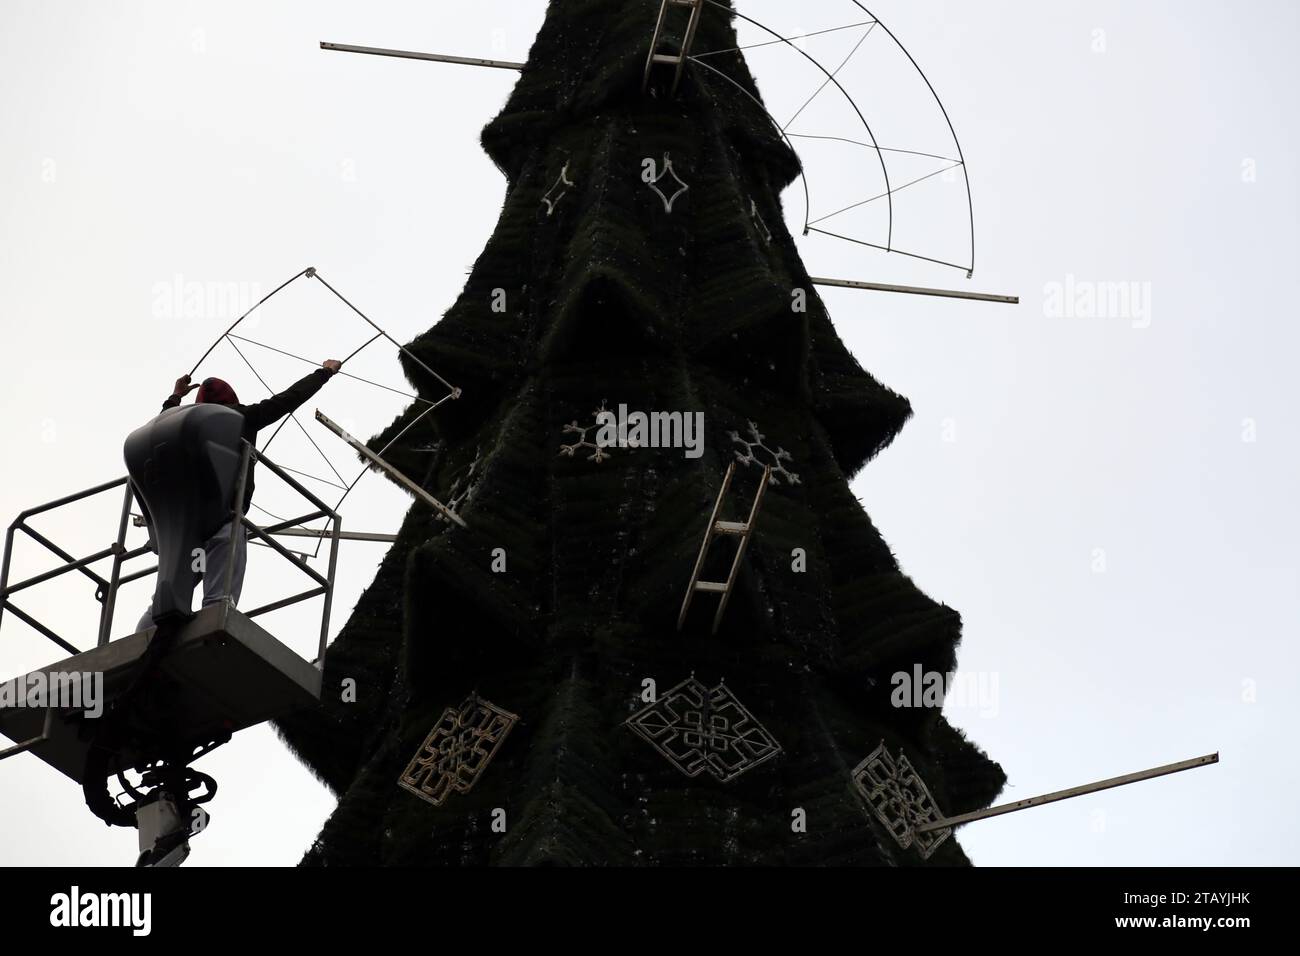 Ein Arbeiter wird gesehen, wie er einen Weihnachtsbaum auf Deribasowskaja installiert. Trotz des anhaltenden Krieges mit der Russischen Föderation wird der Neujahrsbaum auf der Hauptstraße von Odessa - Deribasowskaja installiert Nikolaustag, den die Ukraine zum ersten Mal nach dem julianischen Kalender am 6. Dezember feiern wird. Nach Angaben der Stadtverwaltung wird die Installation in diesem Jahr nicht aus dem Stadtbudget, sondern von Geschäftsleuten bezahlt, die anonym bleiben möchten (Foto: Viacheslav Onyschtschenko/SOPA Images/SIPA USA) Stockfoto